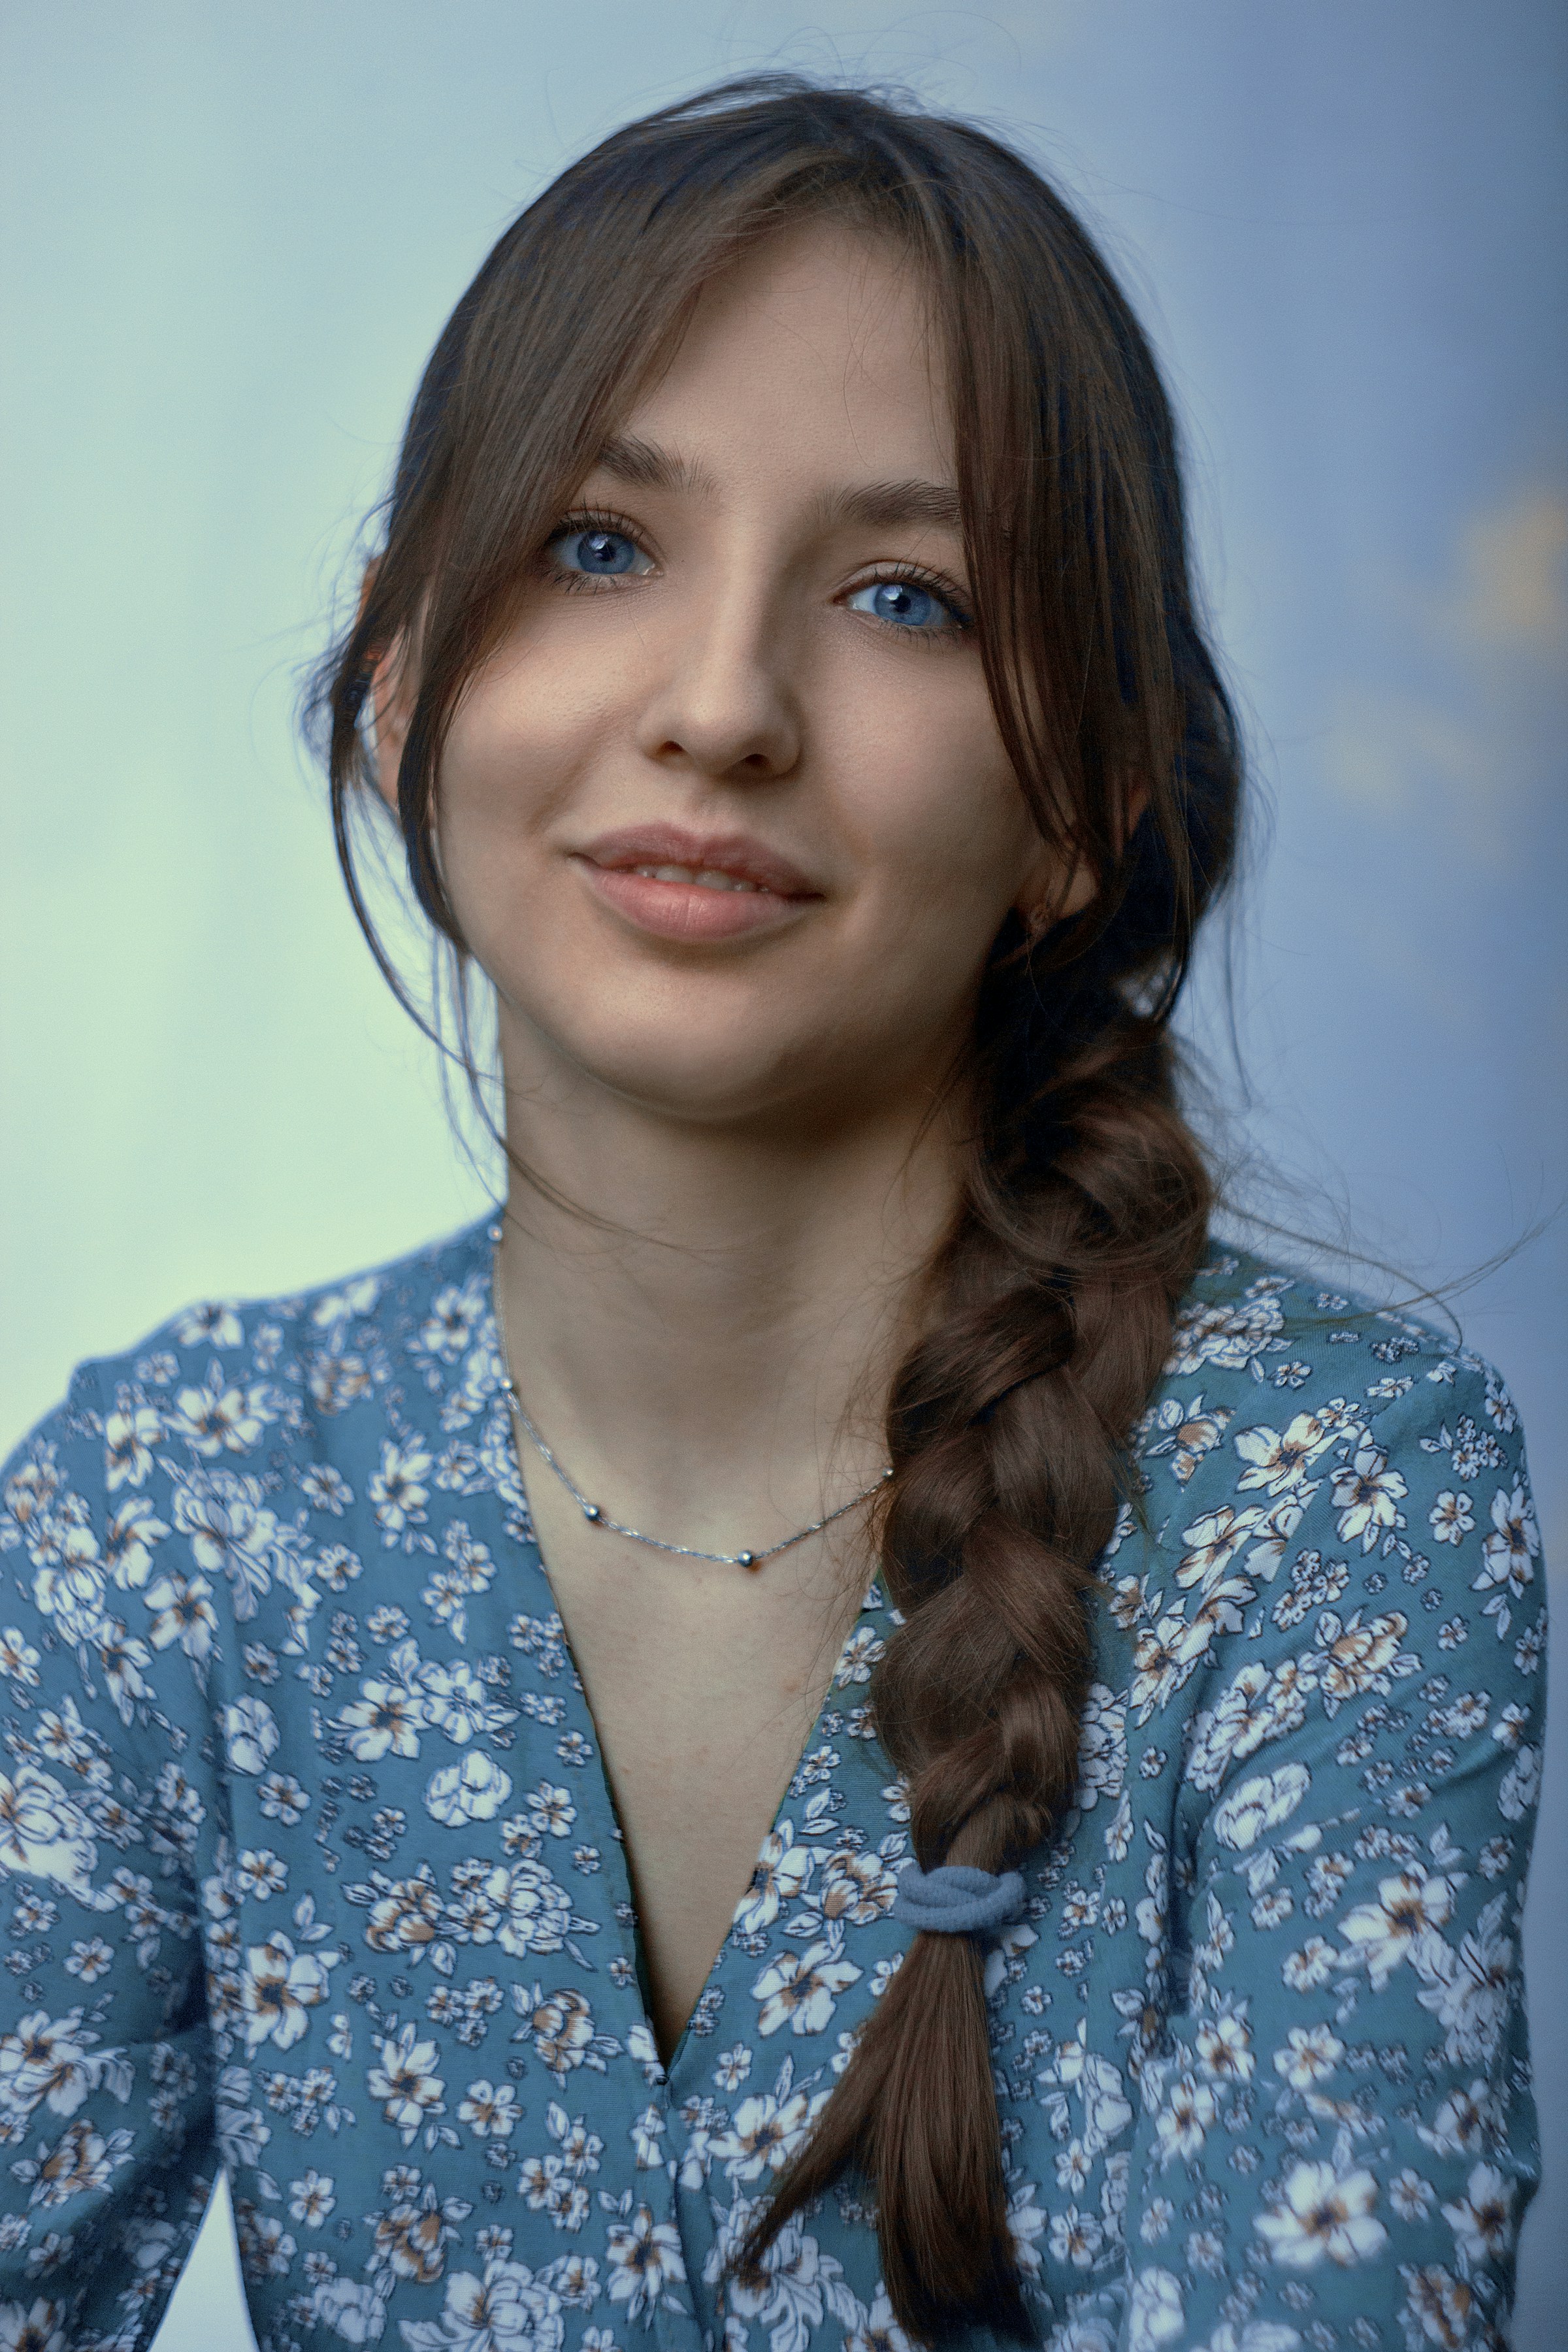 Eine junge Frau in einem blau-weiß geblümten Button-up-Shirt | Quelle: Unsplash